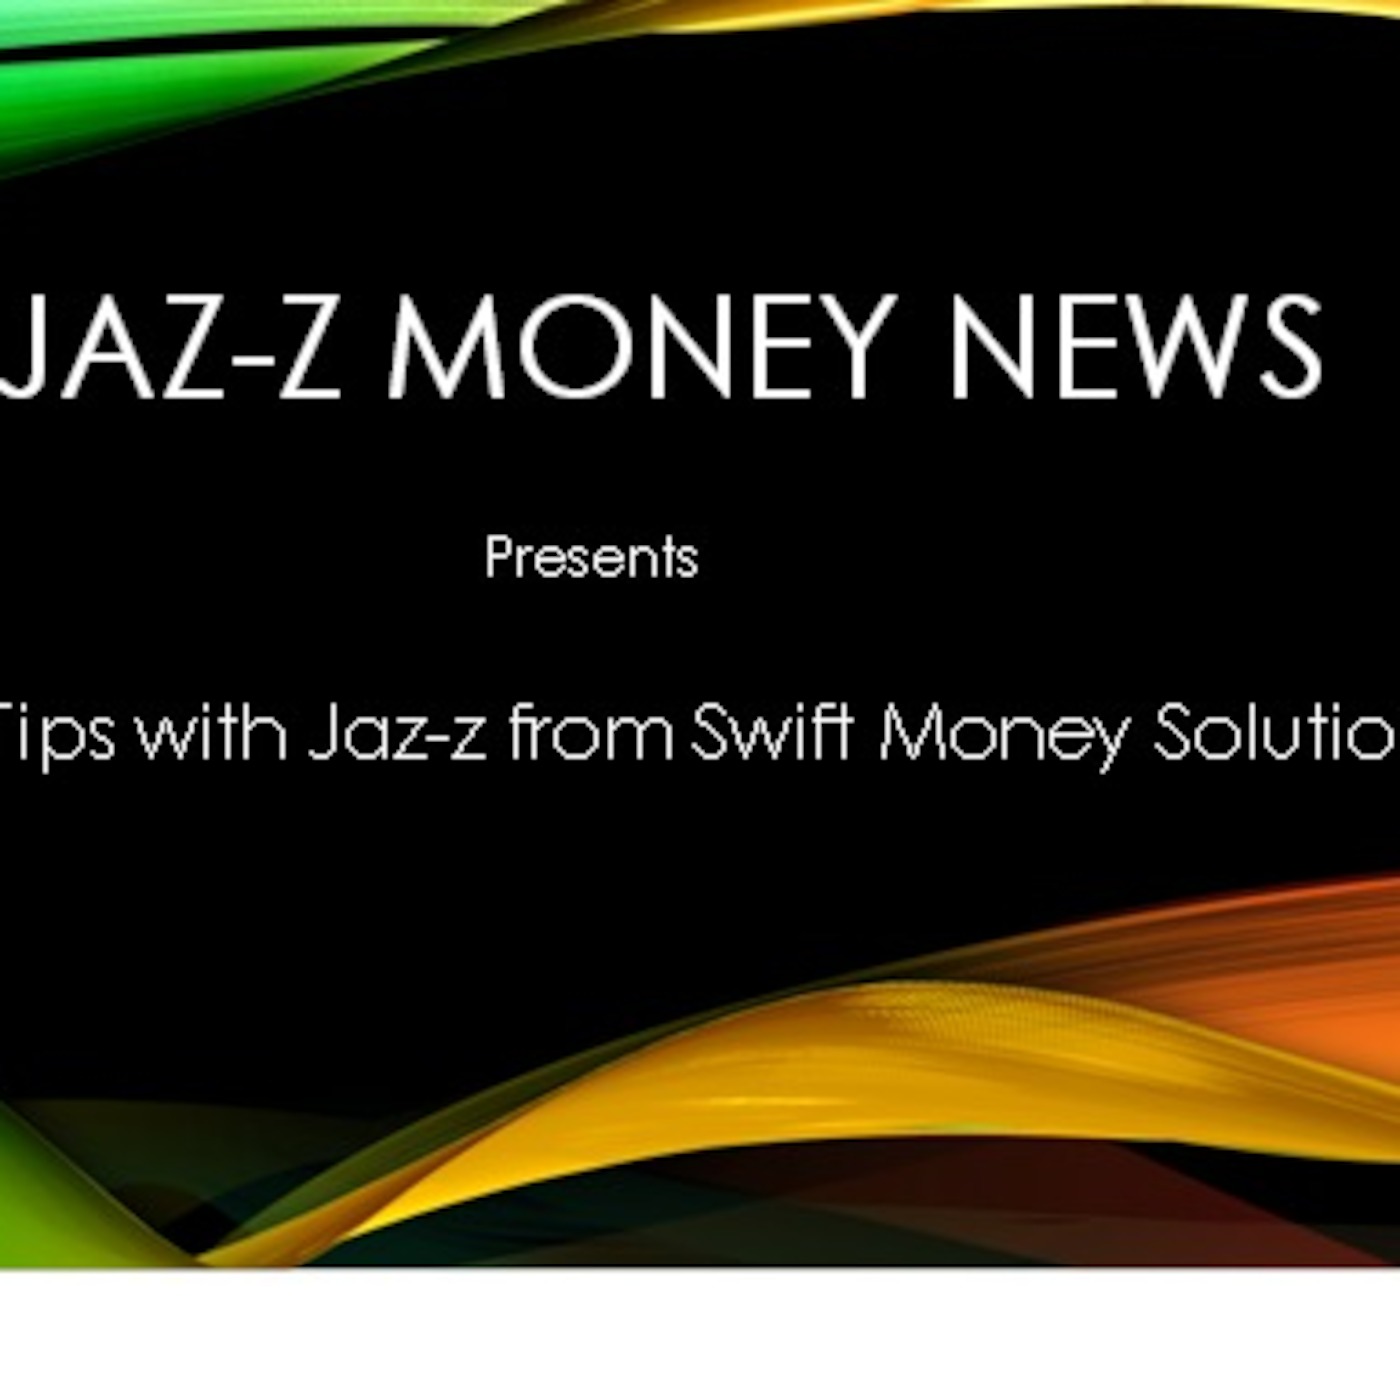 JAZ-Z & WJAZ-Z Money Empowering Tip #14